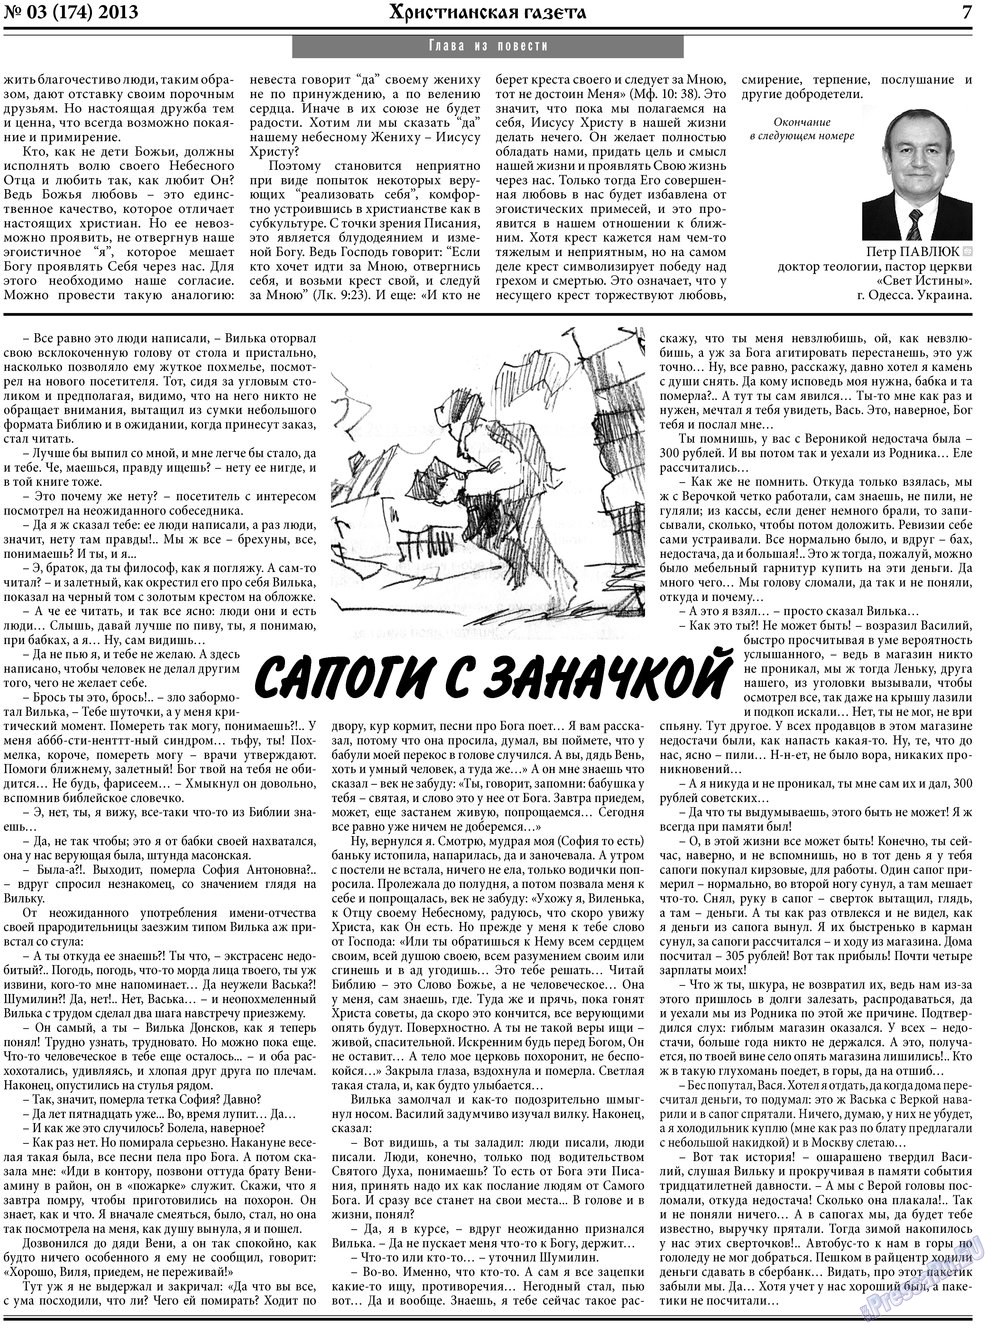 Христианская газета, газета. 2013 №3 стр.7